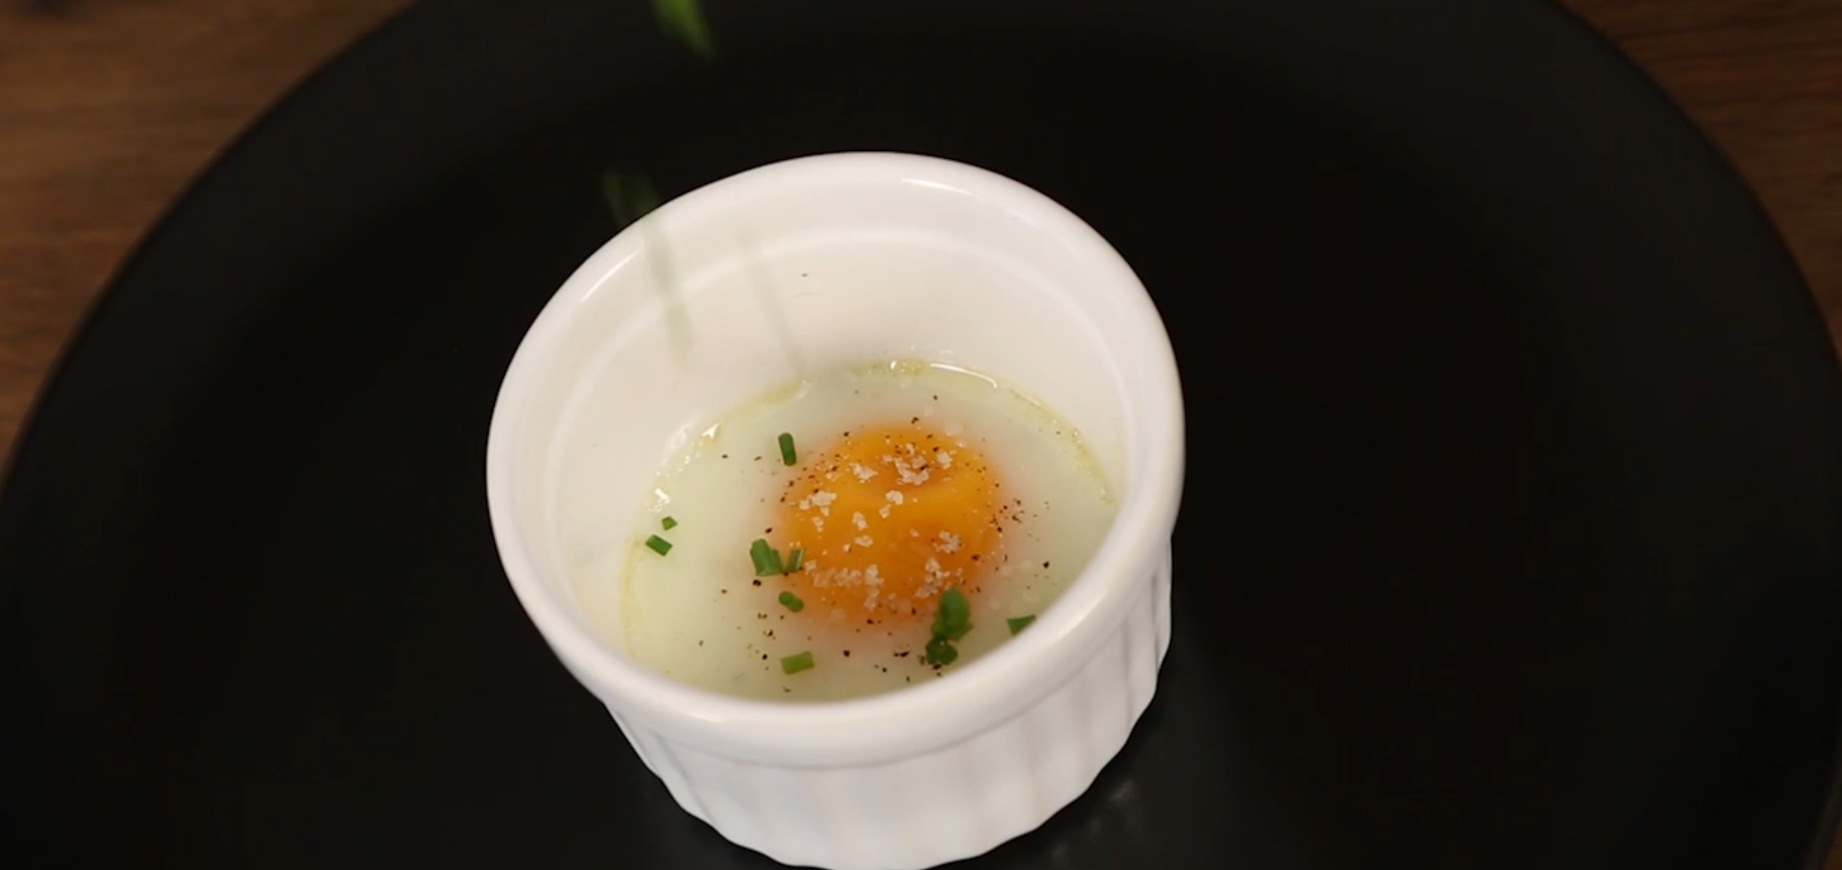 10 façons de réutiliser les coquilles d'œufs - Ôdélices